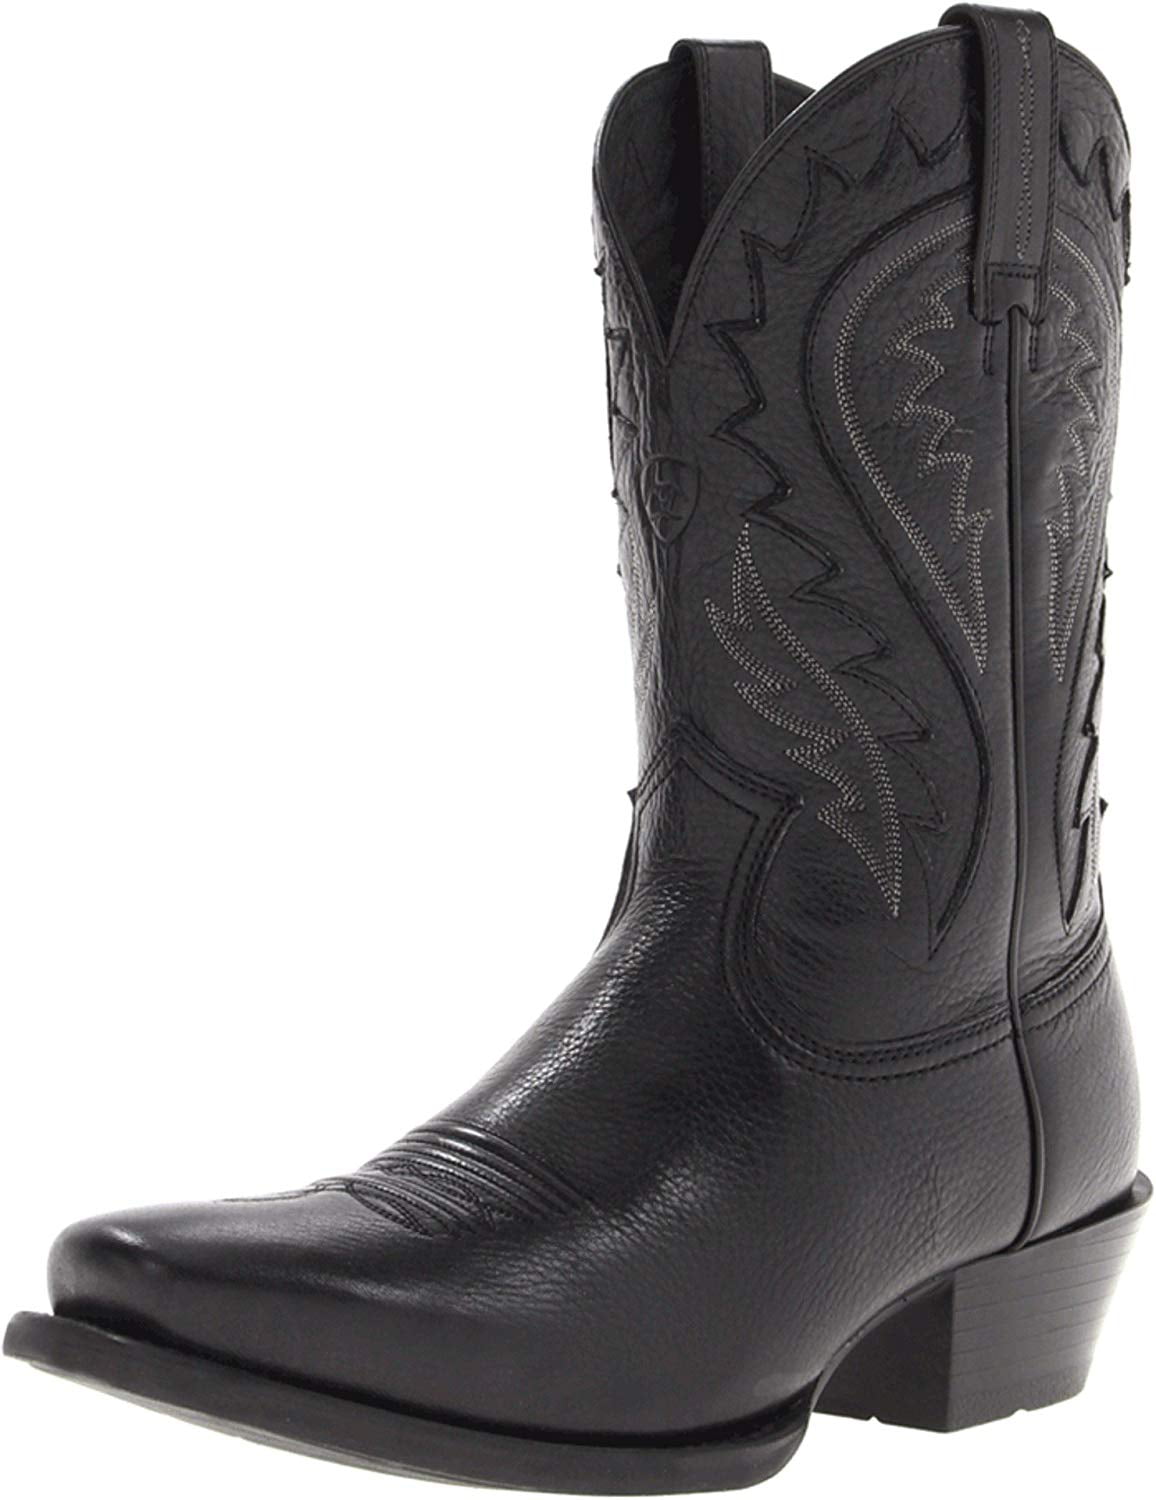 Ariat Men's Legend Phoenix Western Cowboy Boot, Black Deertan, 8 M US ...